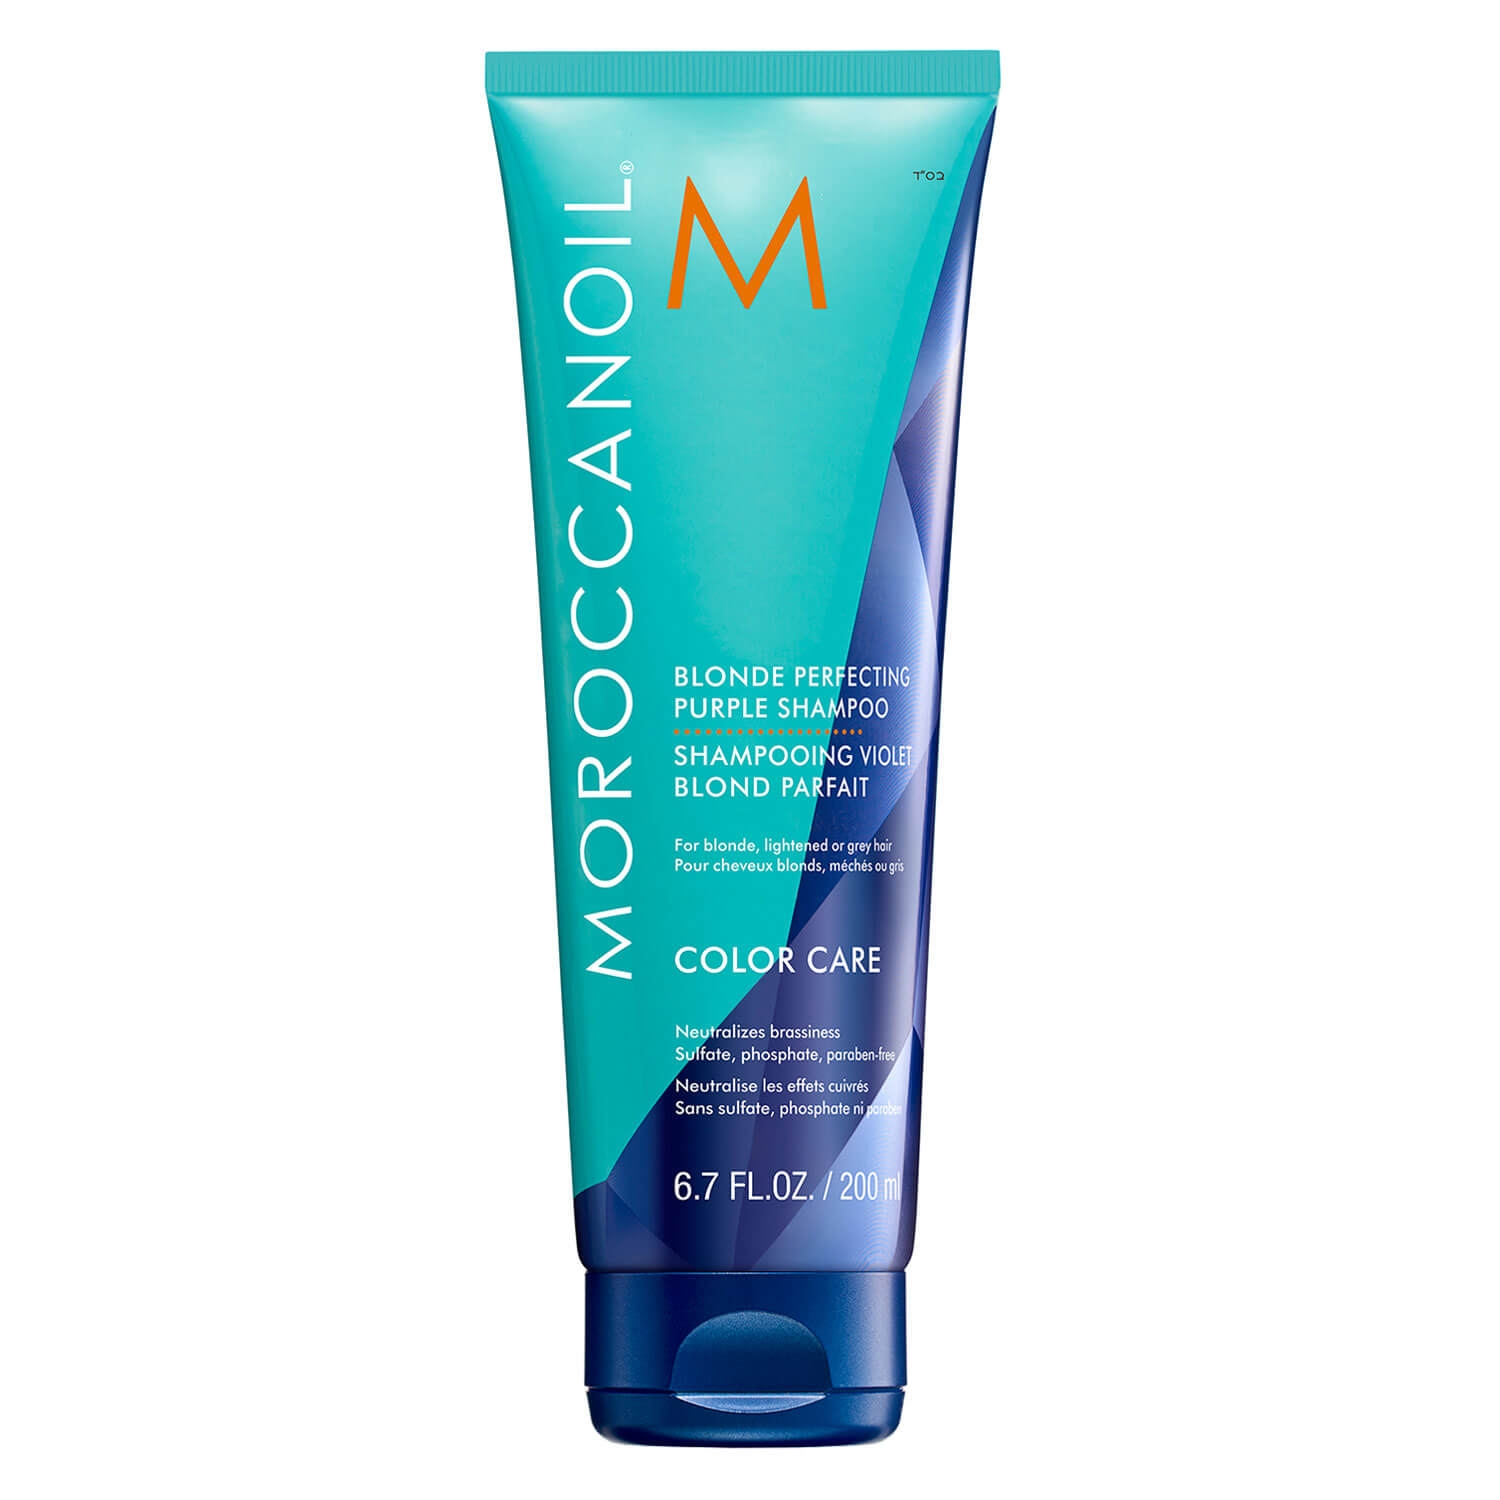 Produktbild von Moroccanoil - Blonde Purple Shampoo